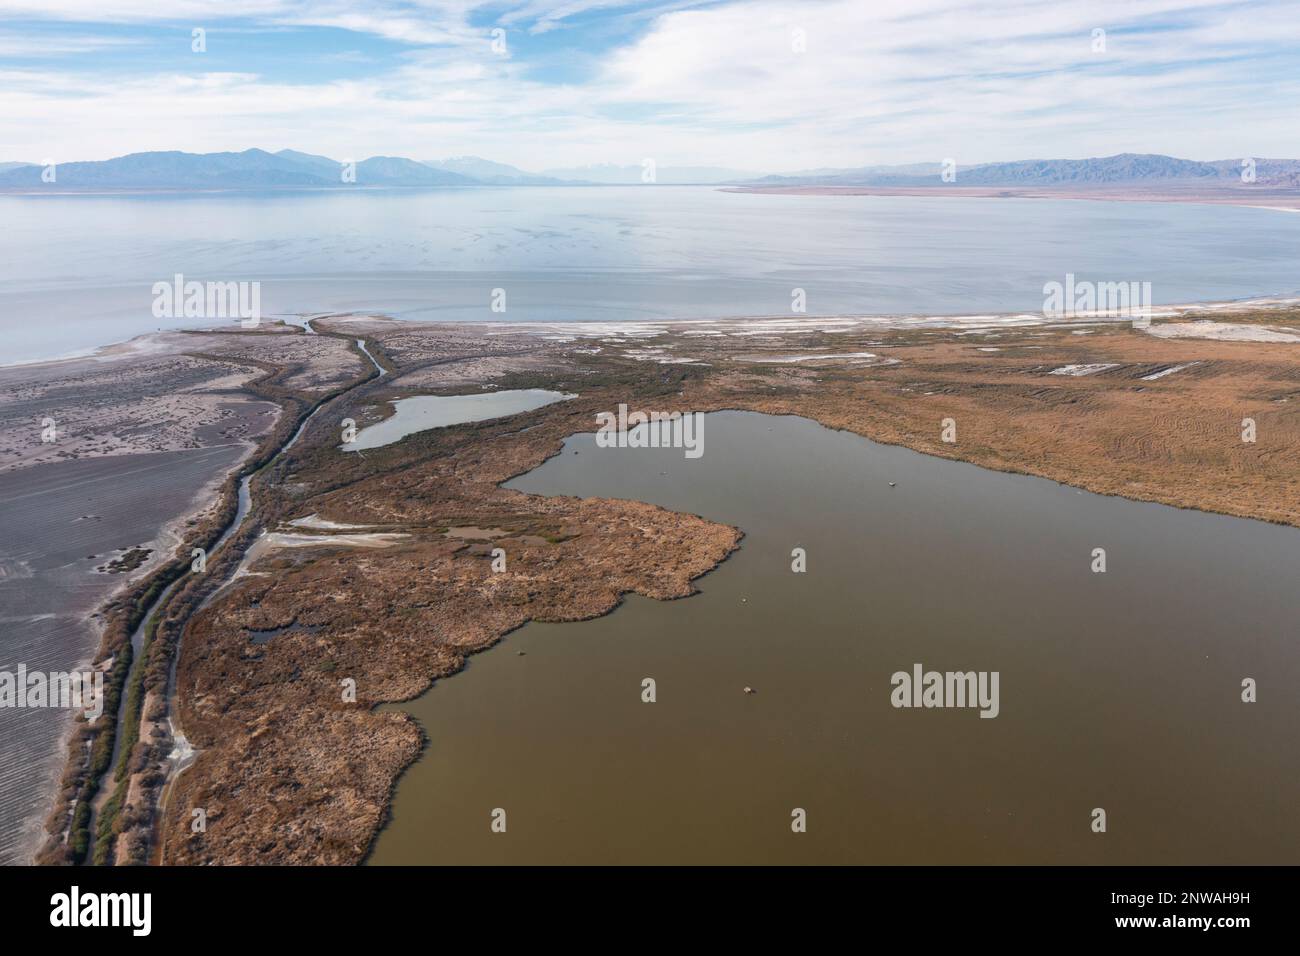 Les zones humides nouvellement créées tentent d'atténuer la crise environnementale qui se produit dans la mer de Salton, un lac en diminution rapide dans le désert de Californie. Banque D'Images